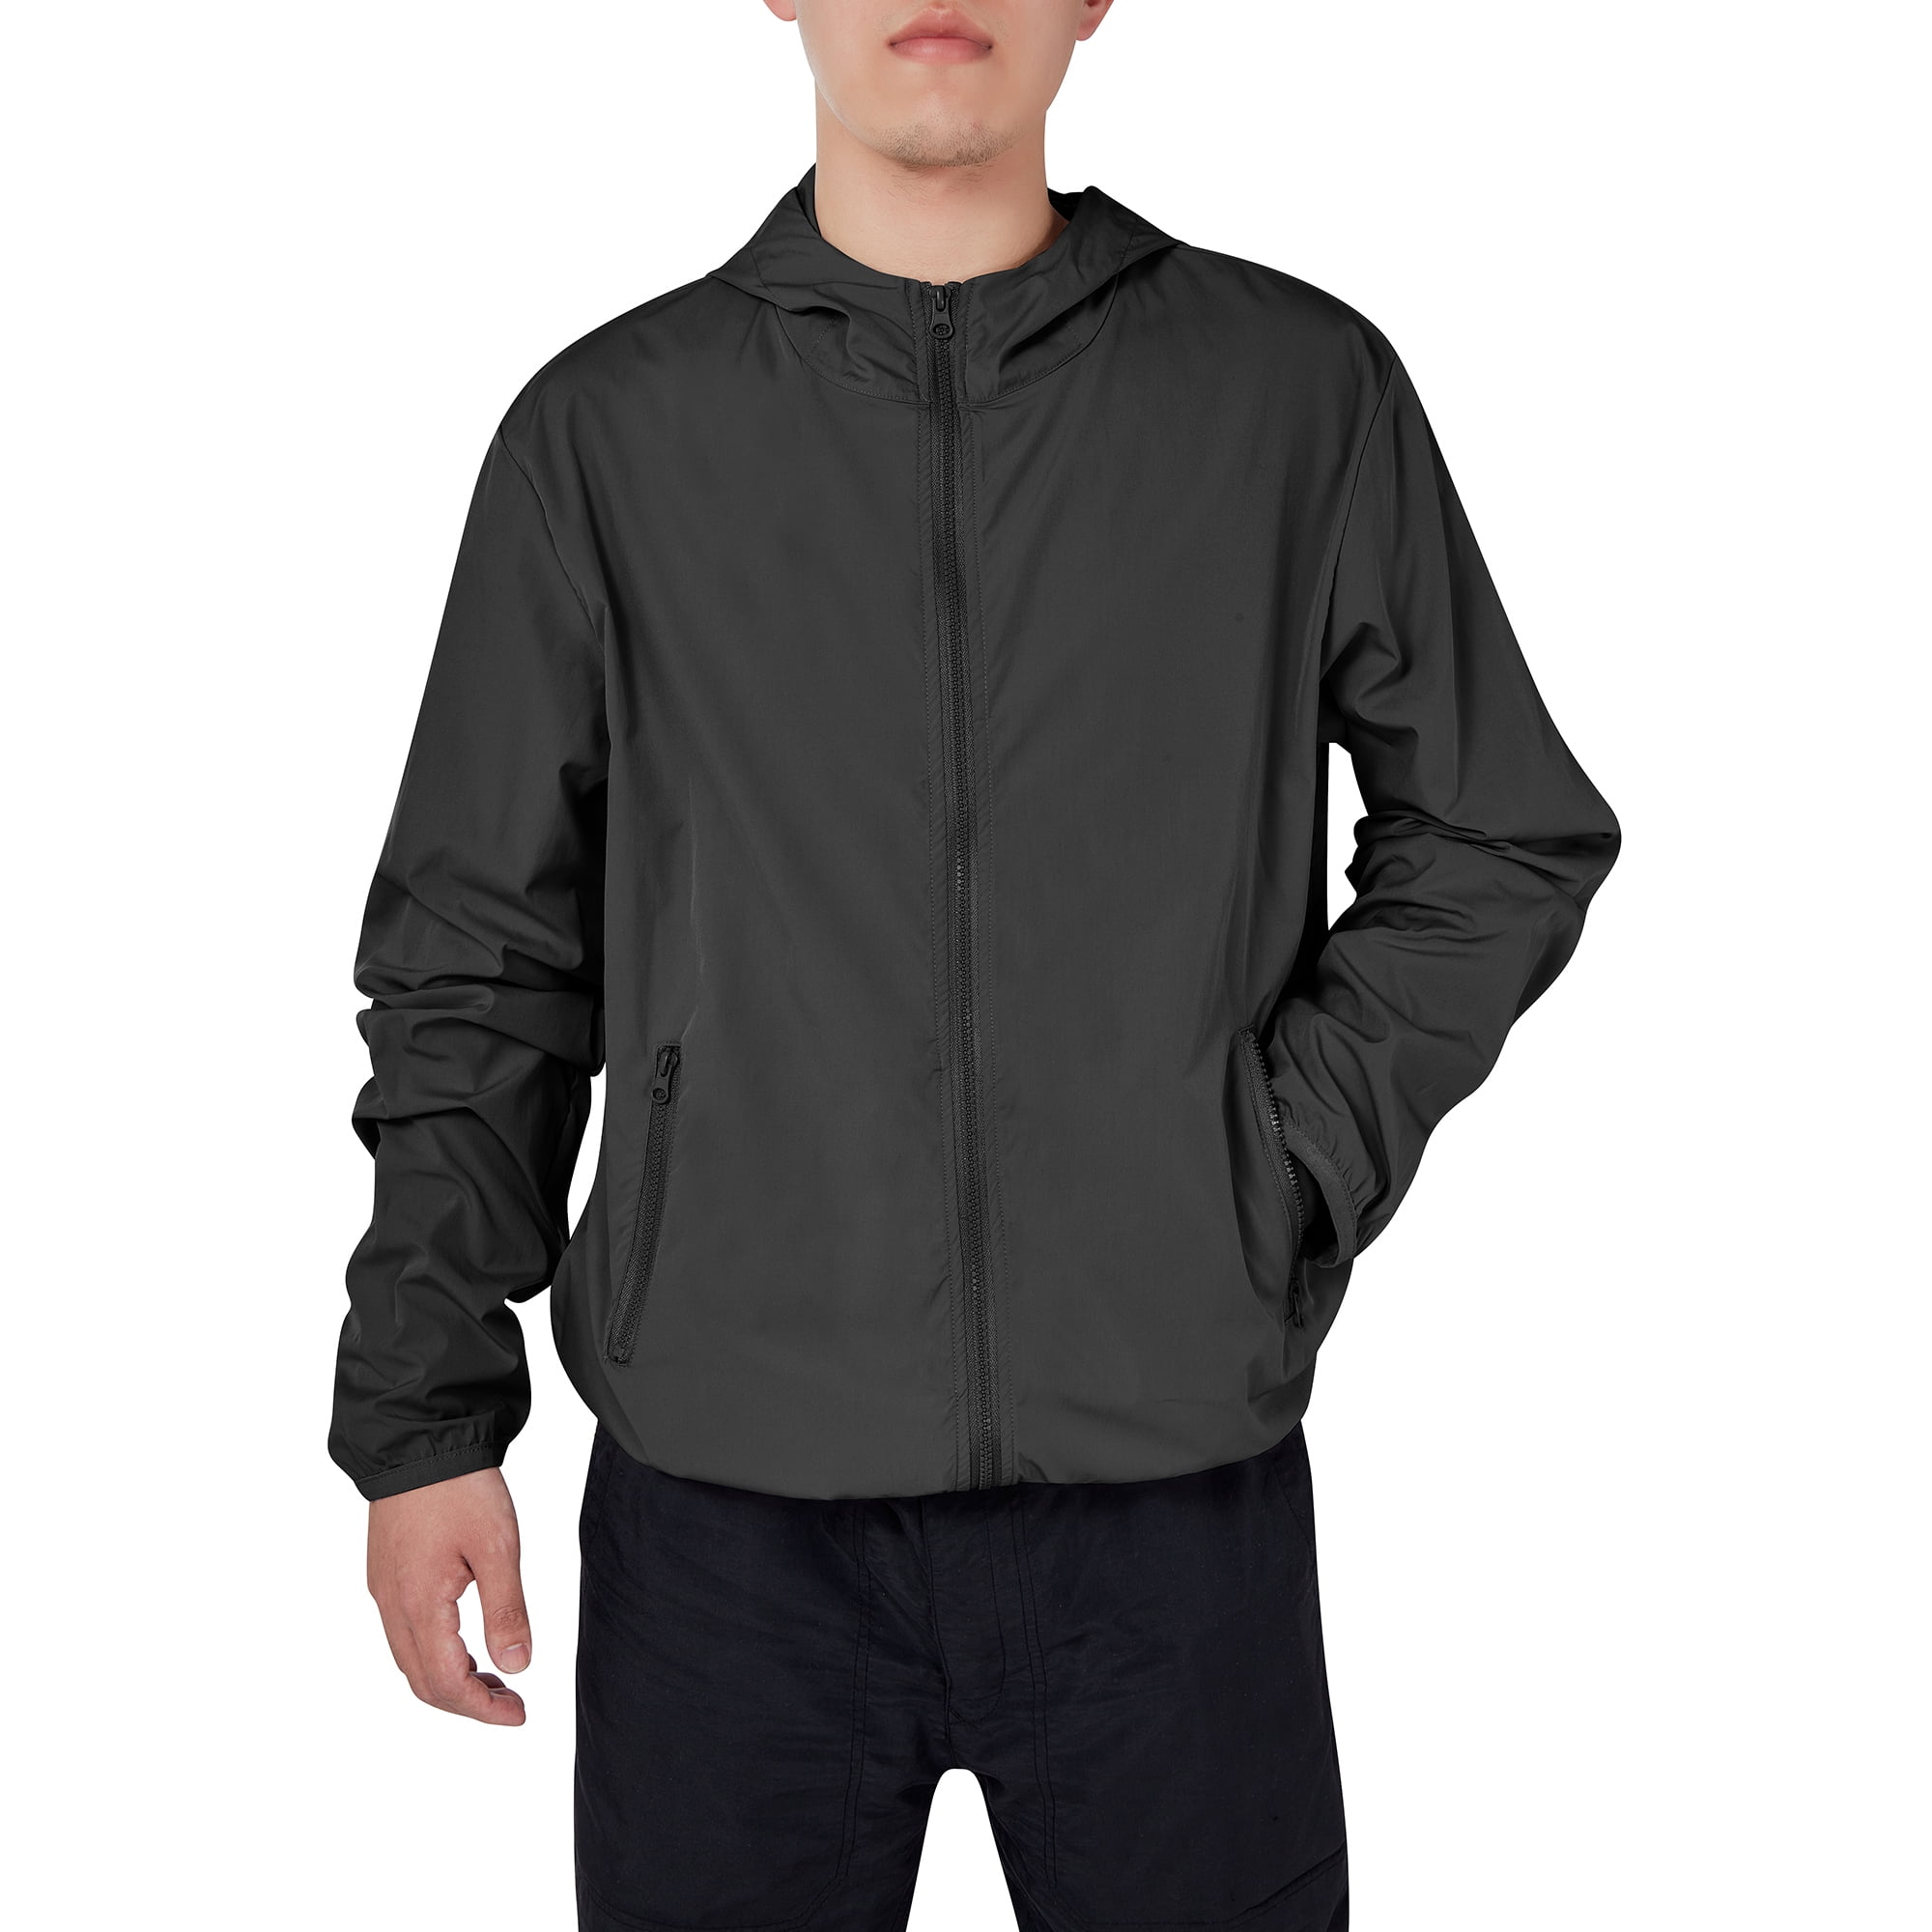 Mens Sportswear Lightweight Polyester Jackets Outdoor Camping Hooded  Windbreaker Jacket Outwear, Black, 2XL - Walmart.com